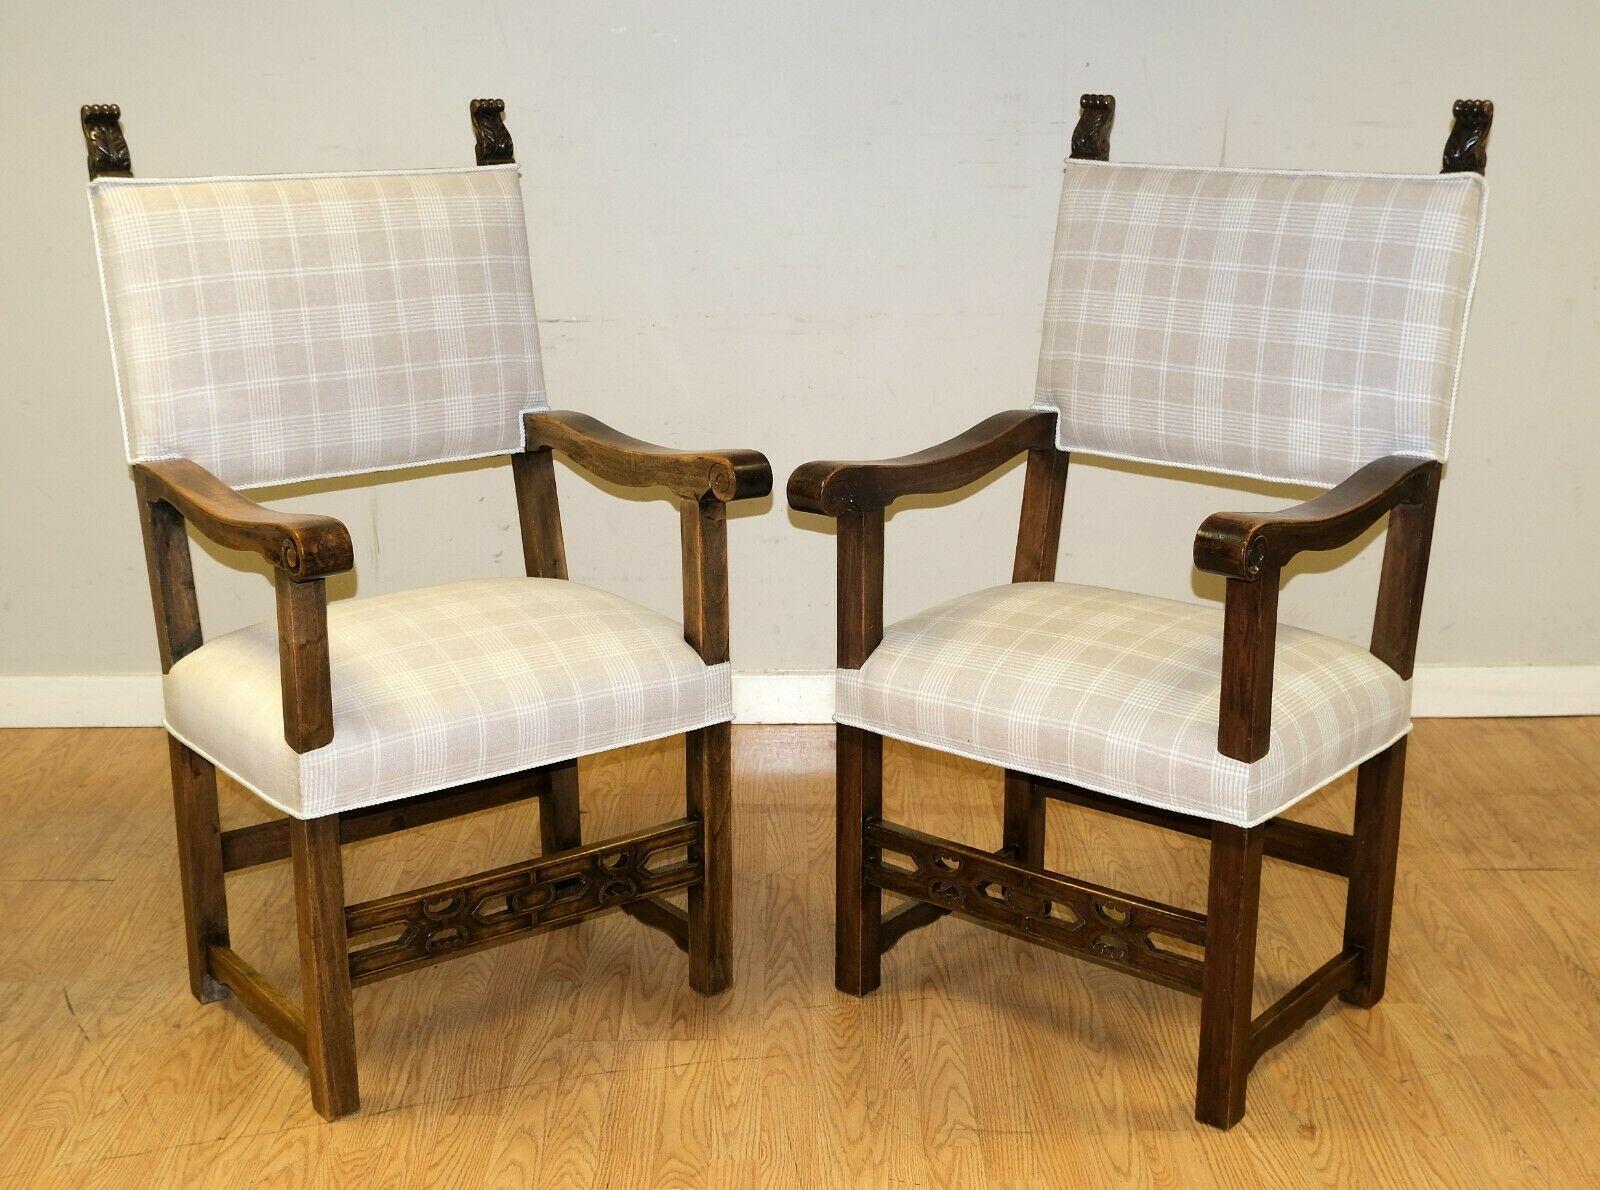 Nous avons le plaisir de proposer à la vente cette élégante paire de fauteuils trône en acajou avec de belles sculptures.

Les fauteuils sont très beaux, avec une assise colorée et un dossier haut. La paire est solide, bien faite et confortable.